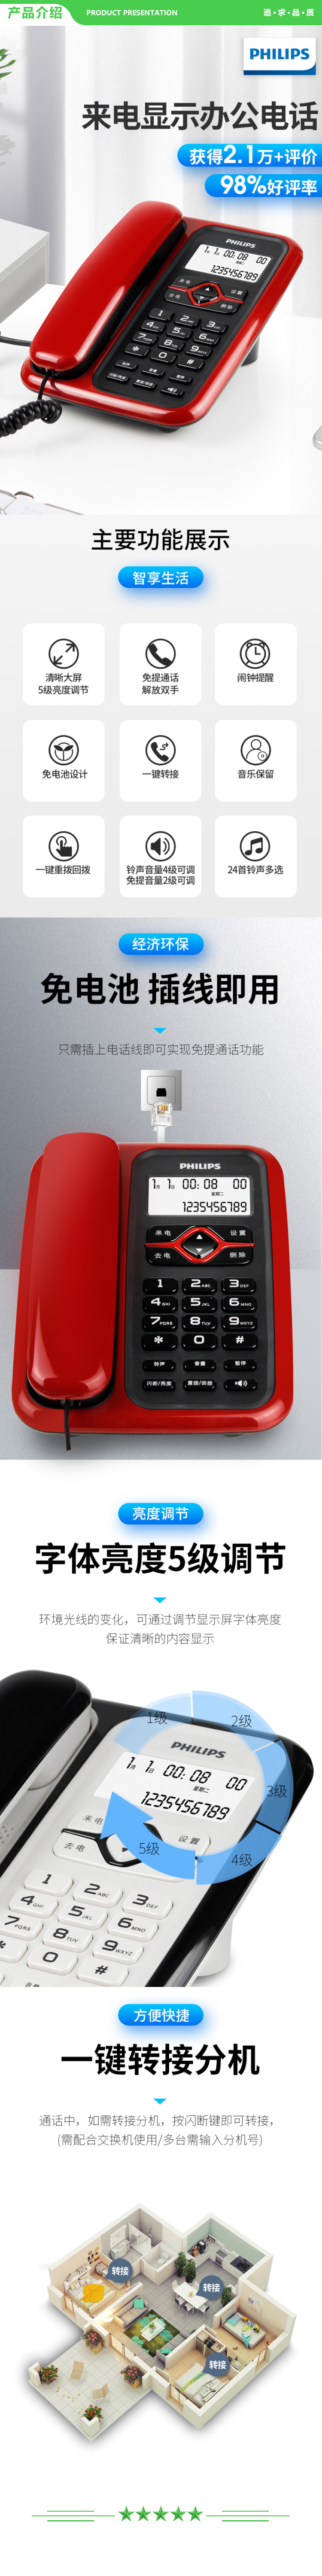 飞利浦 PHILIPS CORD020 电话机座机 固定电话 办公家用 免电池 插线即用 黑色 .jpg